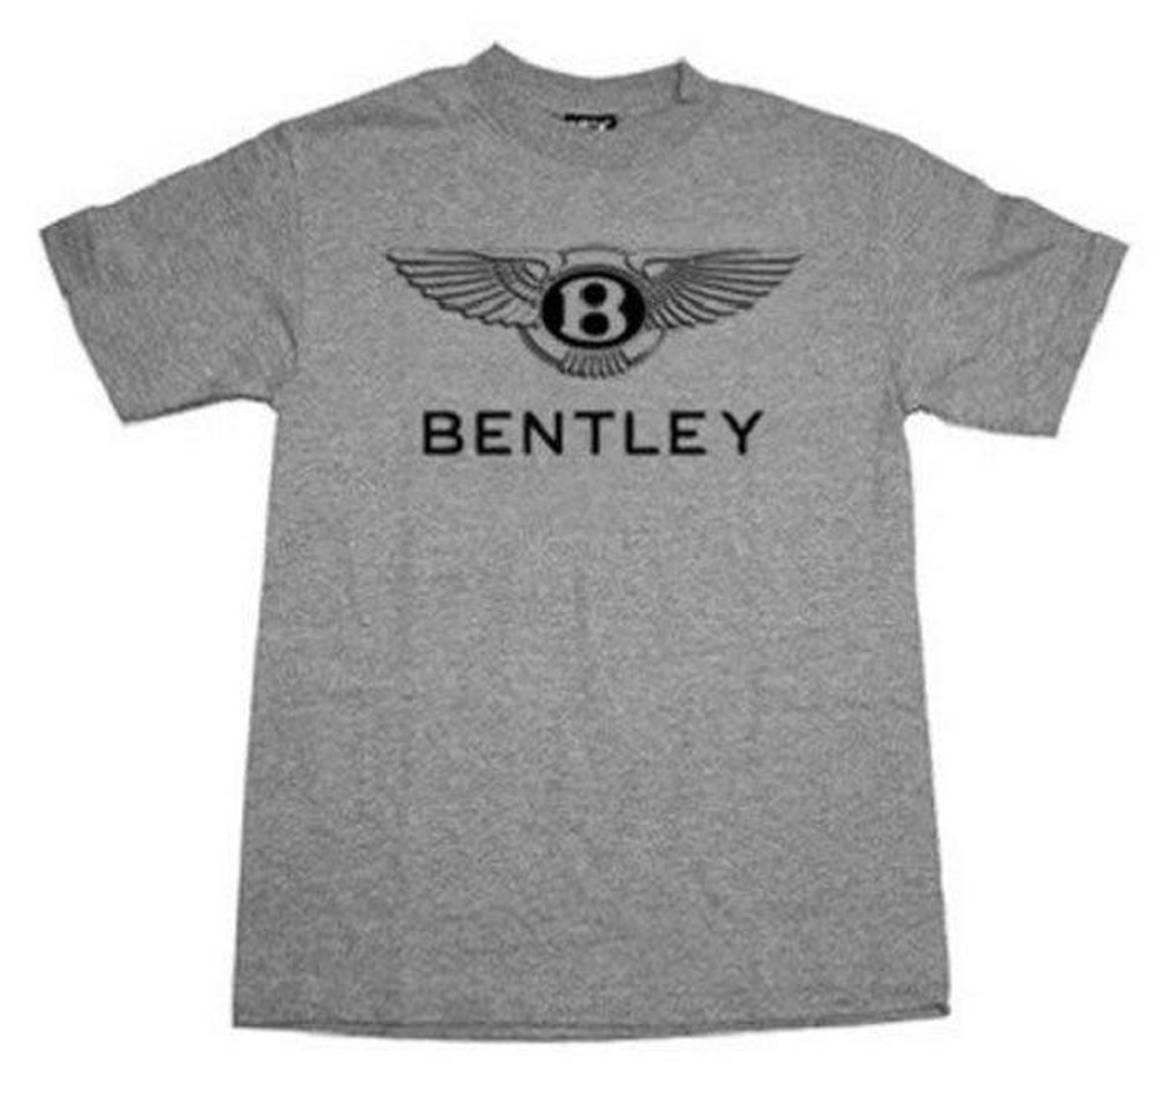 Bentley Apparel envuelto en disputa de marca registrada con Bentley Motors